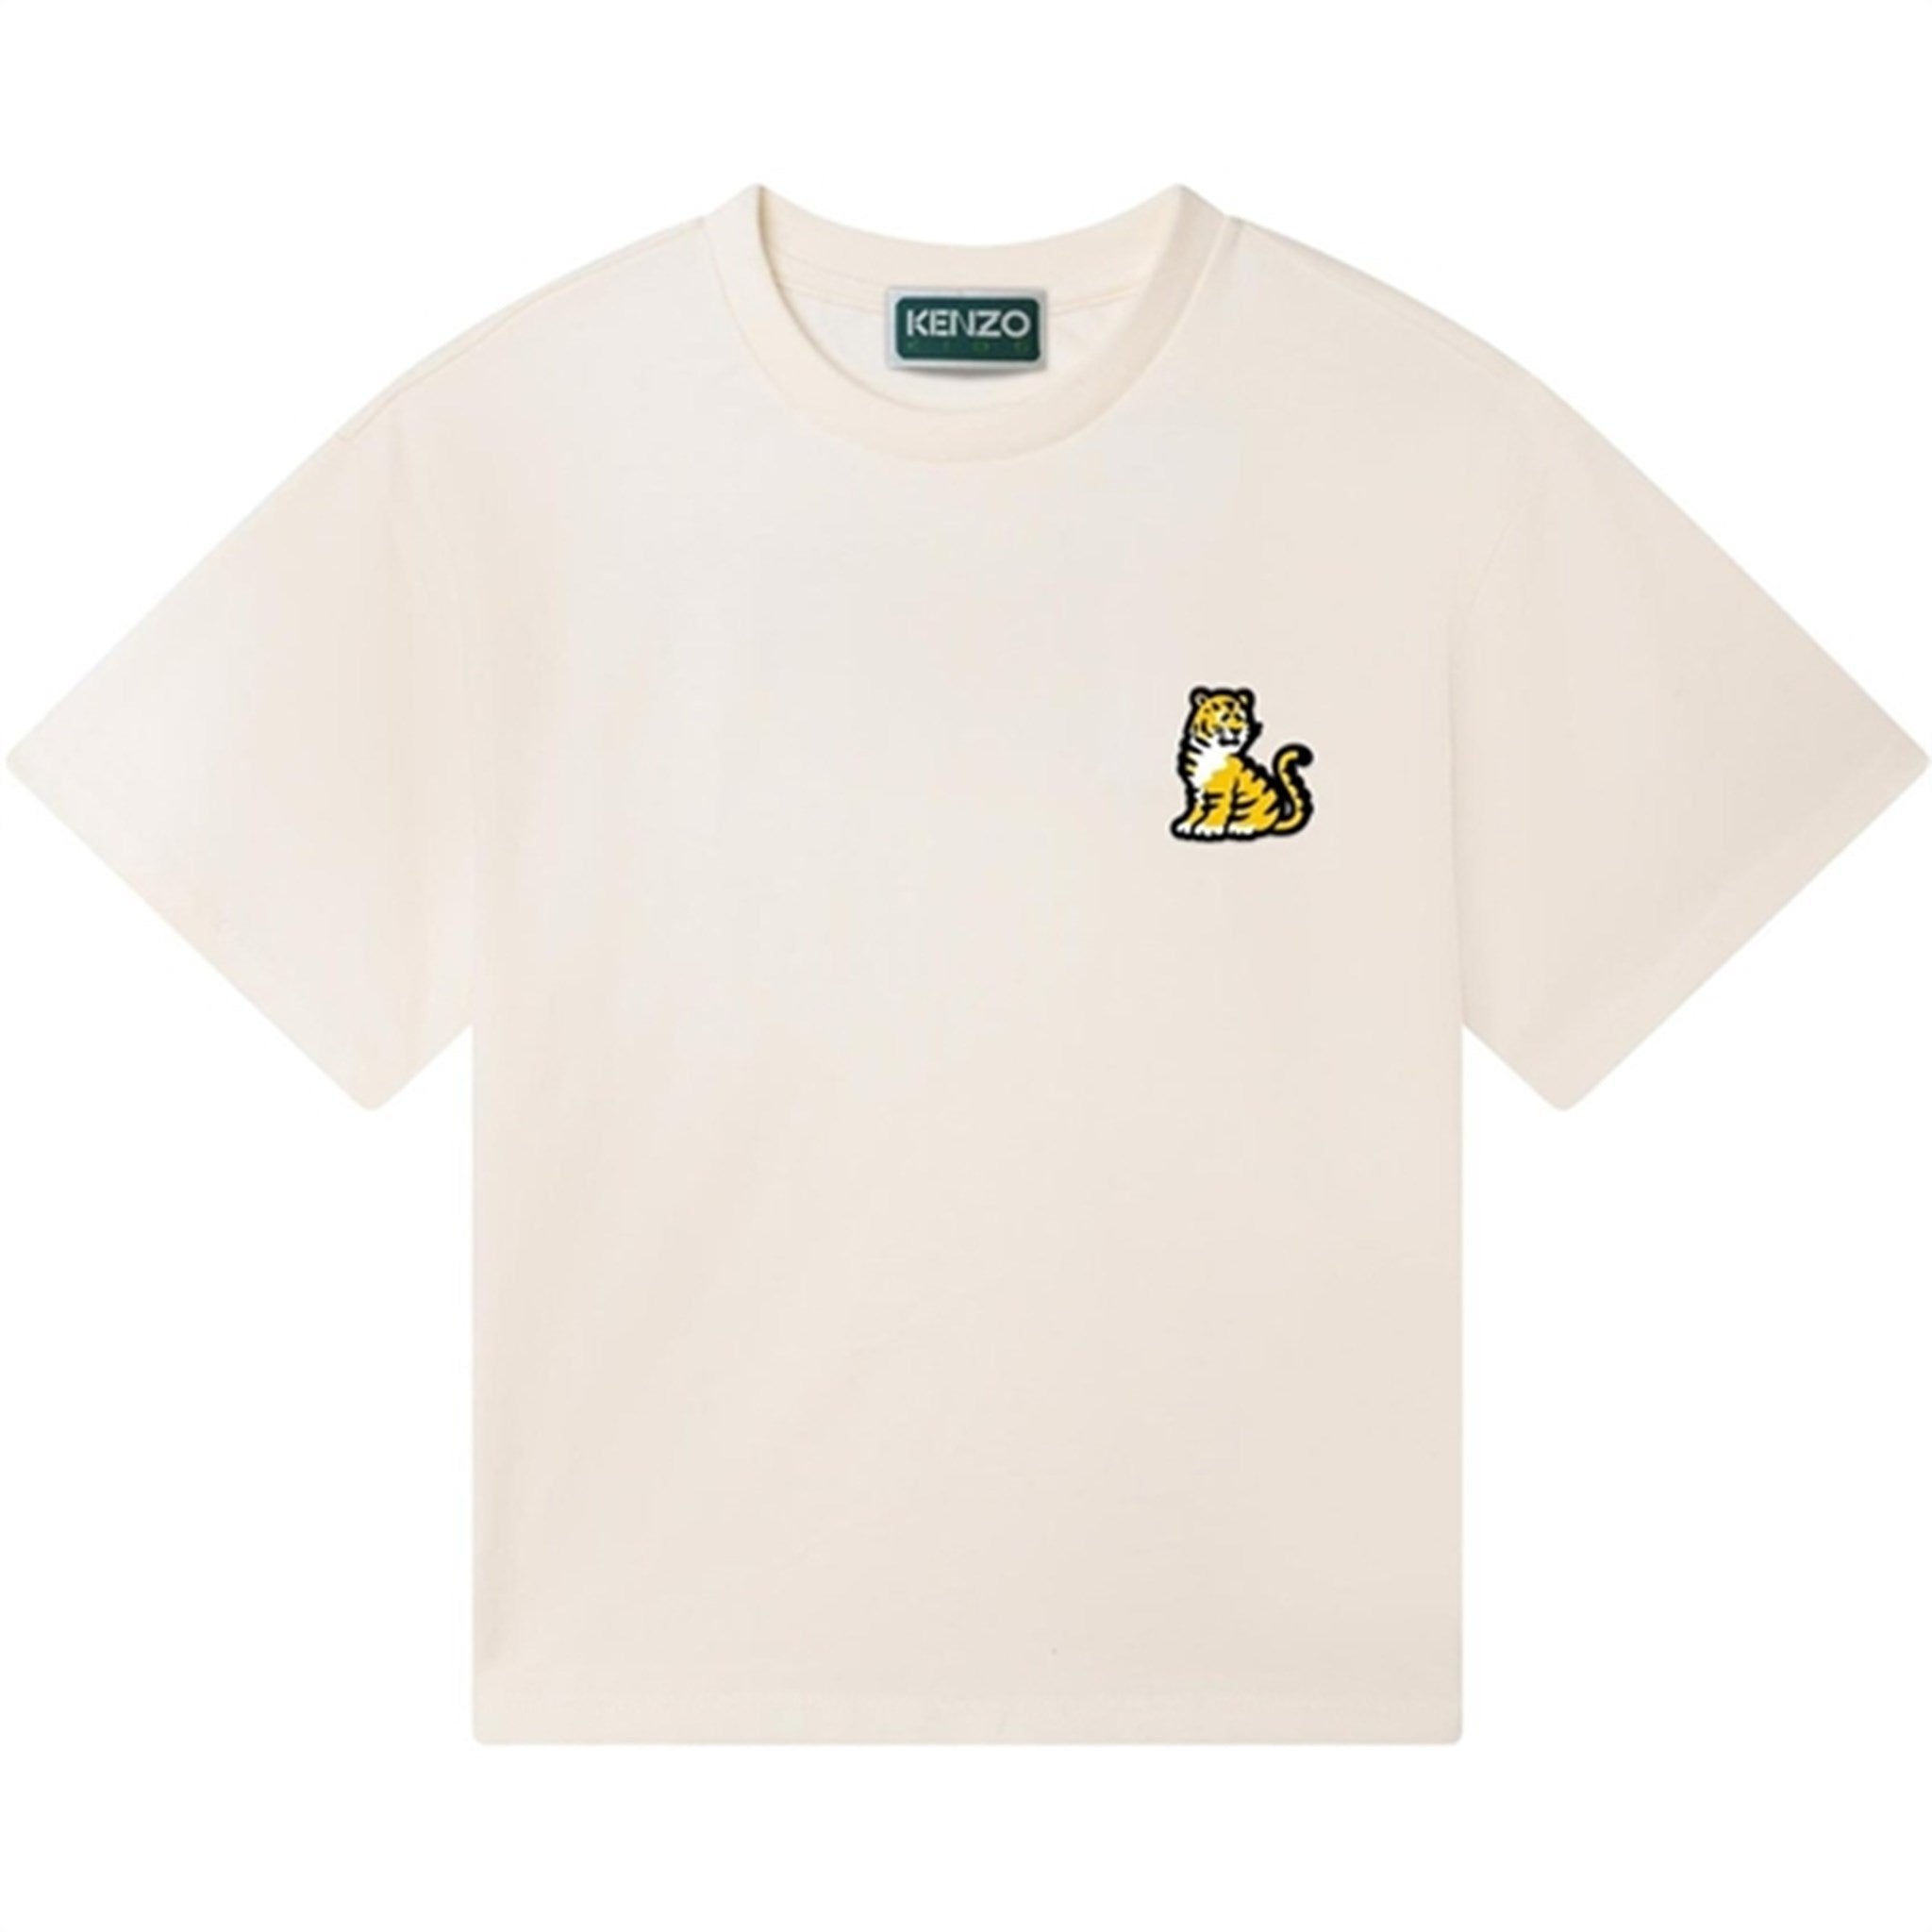 Kenzo T-shirt Cream